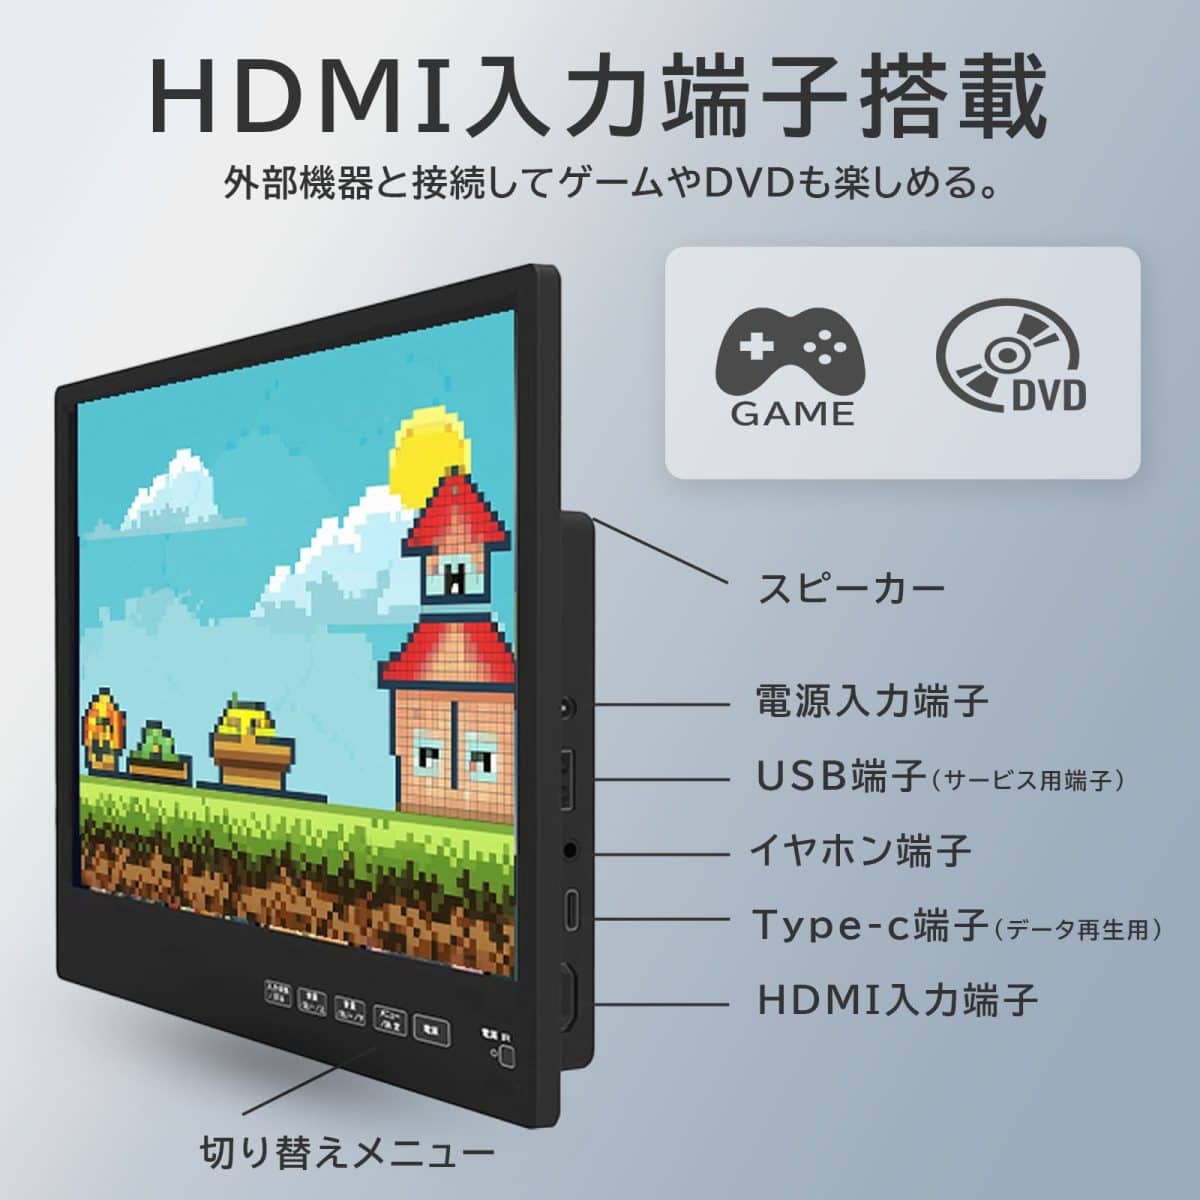 HDMI入力端子搭載